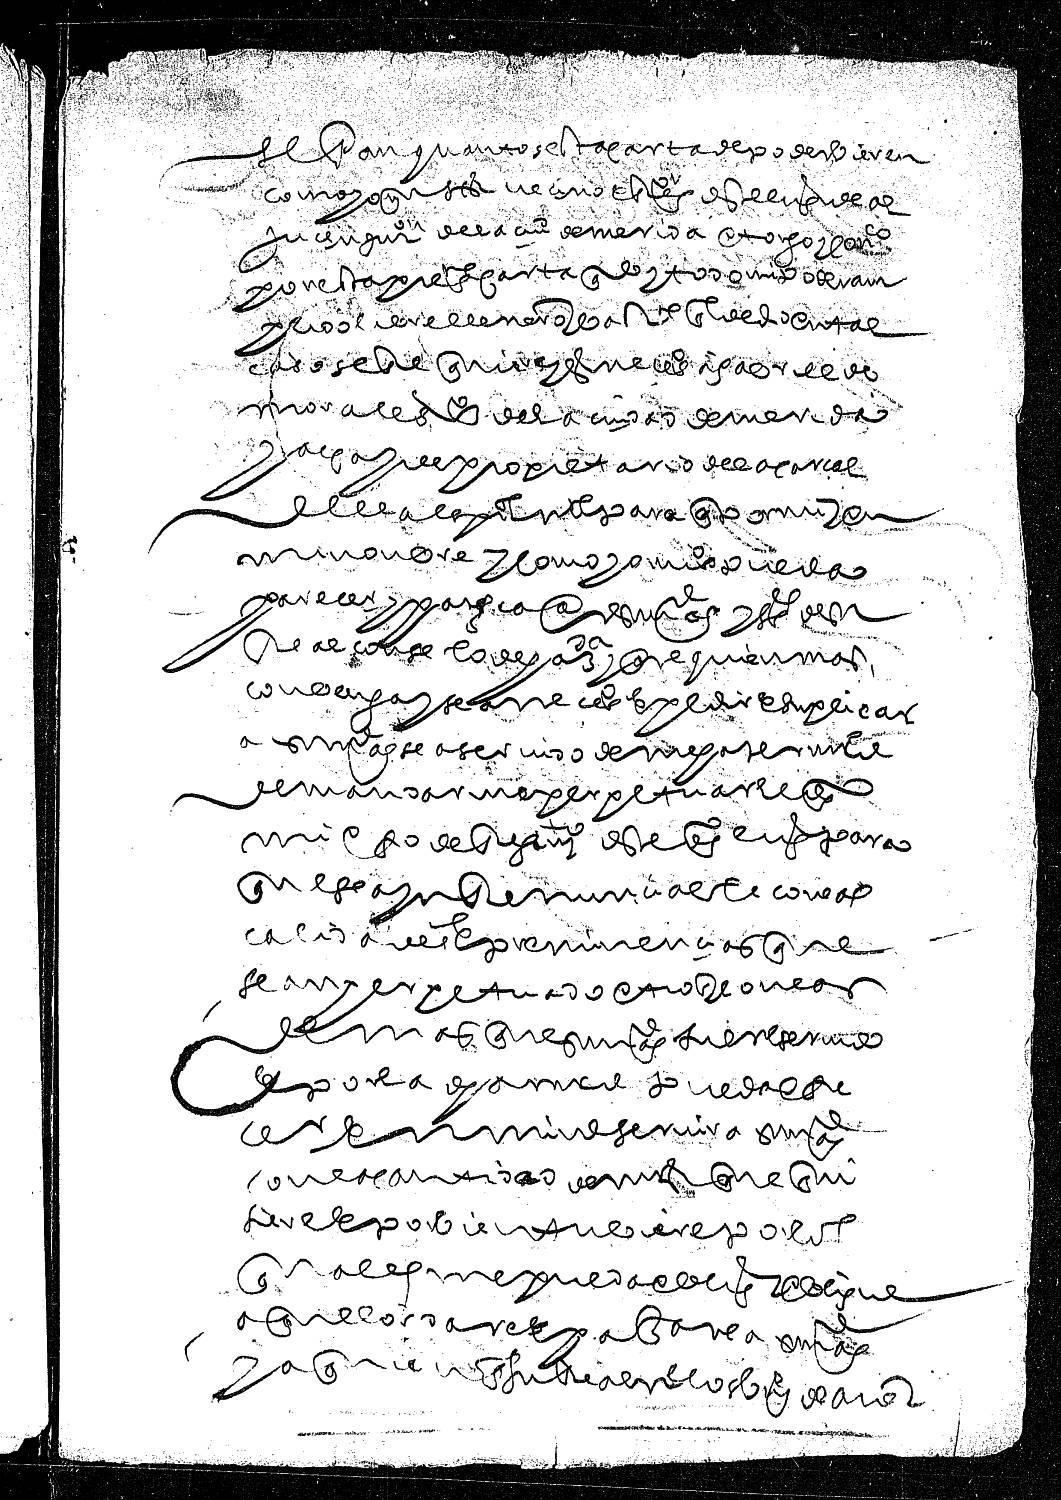 Carta de poder de Martín Fernández, regidor y vecino de Aljucén, jurisdicción de Mérida, dada a Gabriel de Morales, vecino de Mérida , para que le consiga la perpetuación de su oficio.